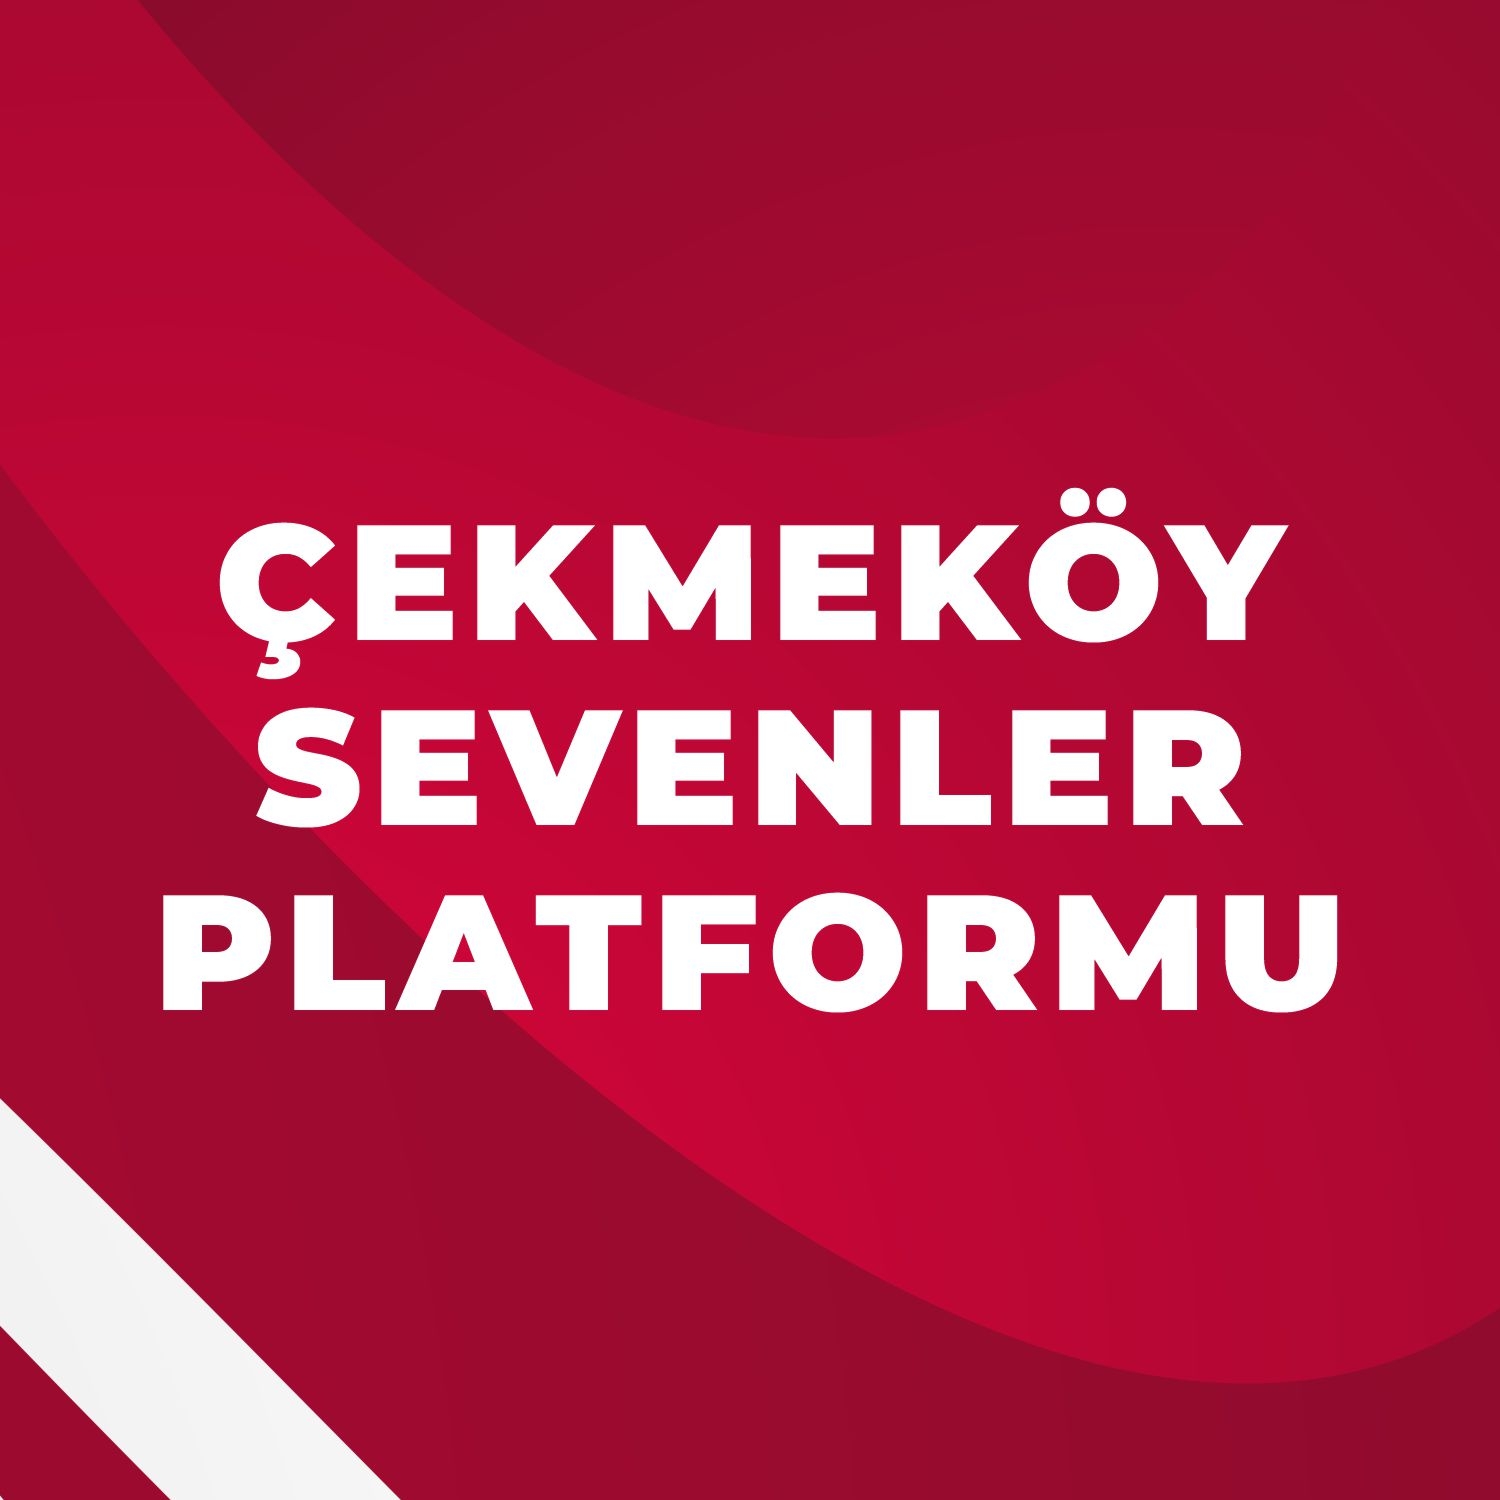 Çekmeköy Sevenler Platformundan kamuoyuna açıklama…